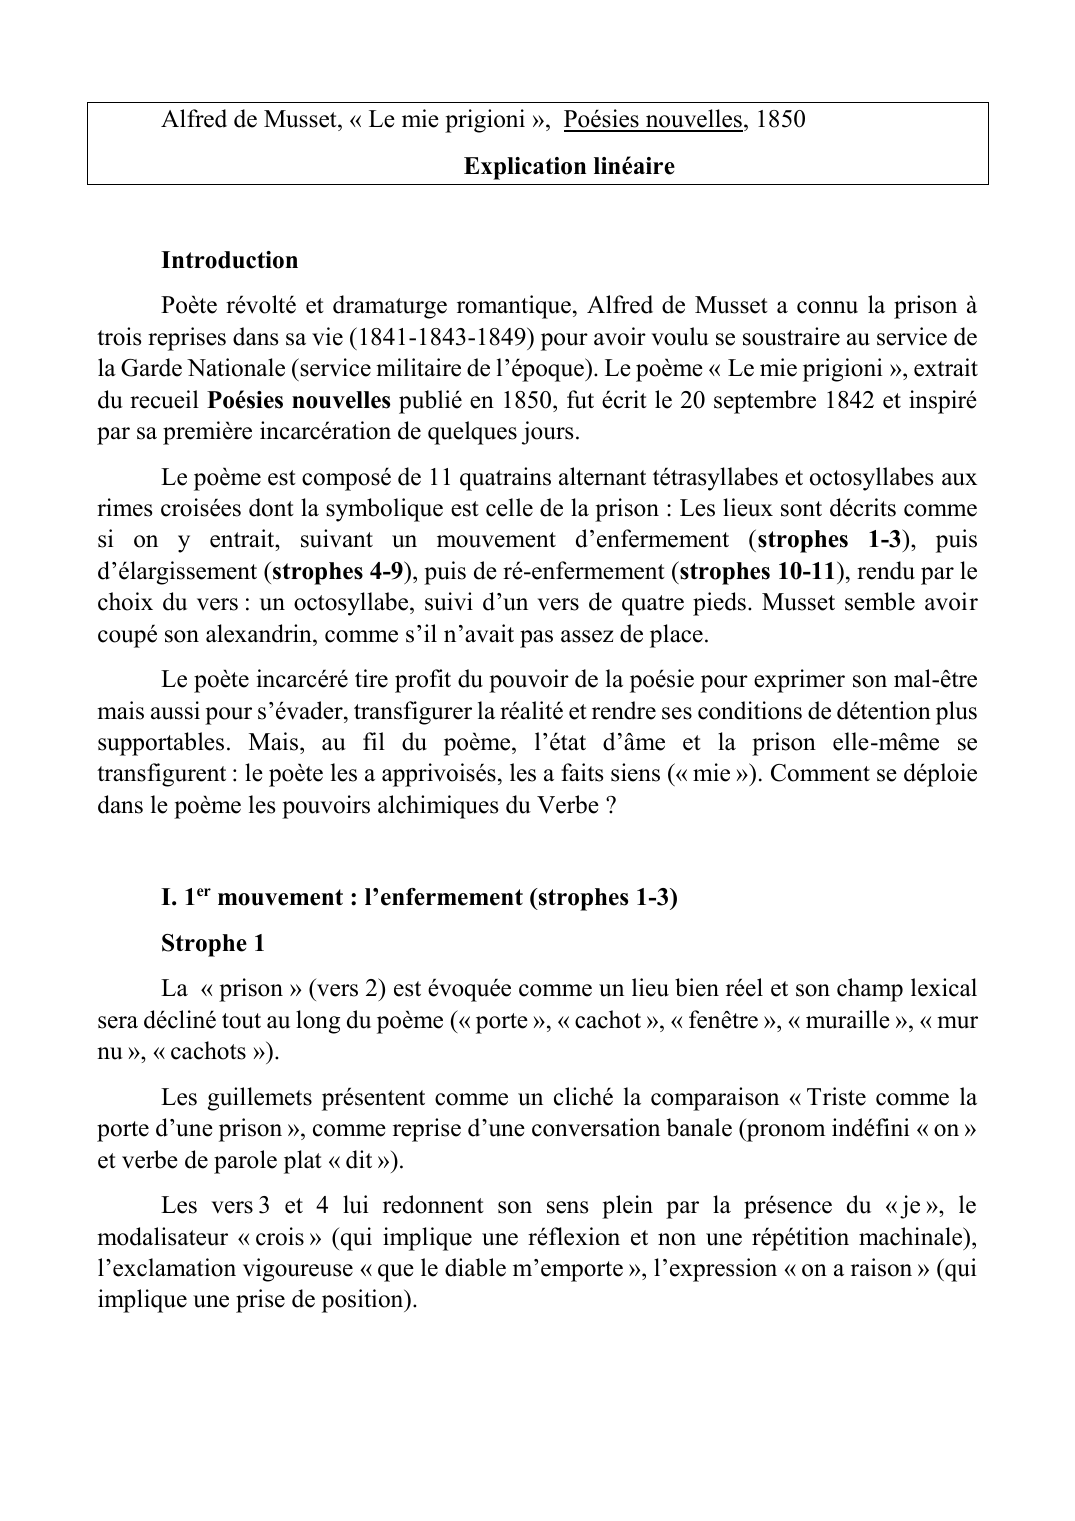 Prévisualisation du document "le mie prigioni" Alfred de musset, annalyse linéaire